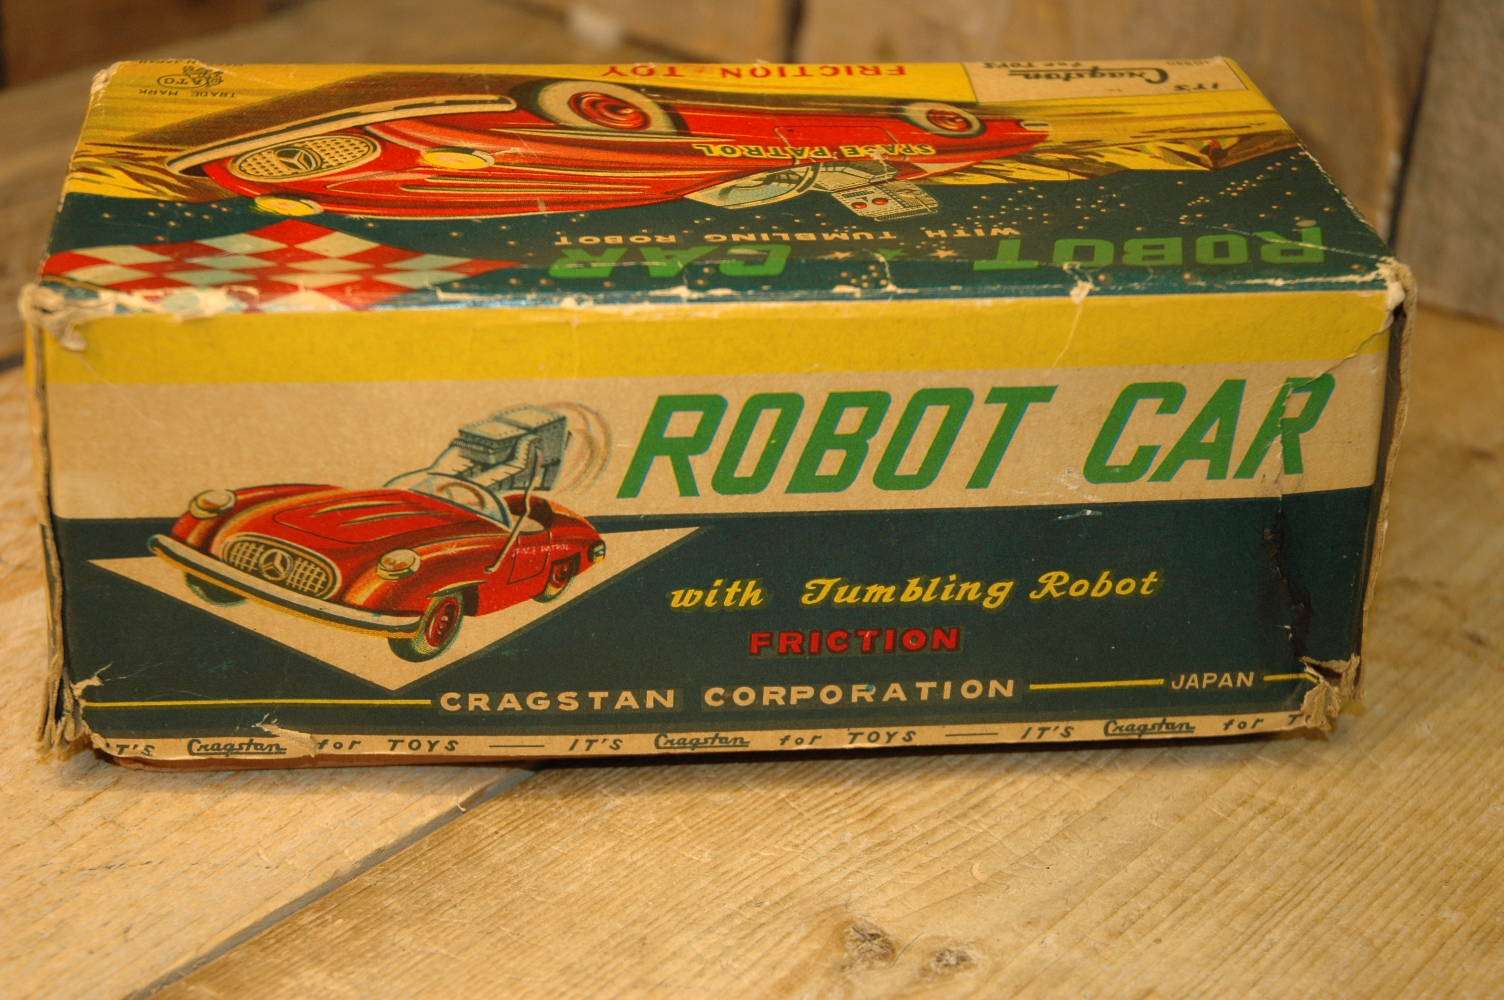 ACT - Robot Car with Tumbling Robot